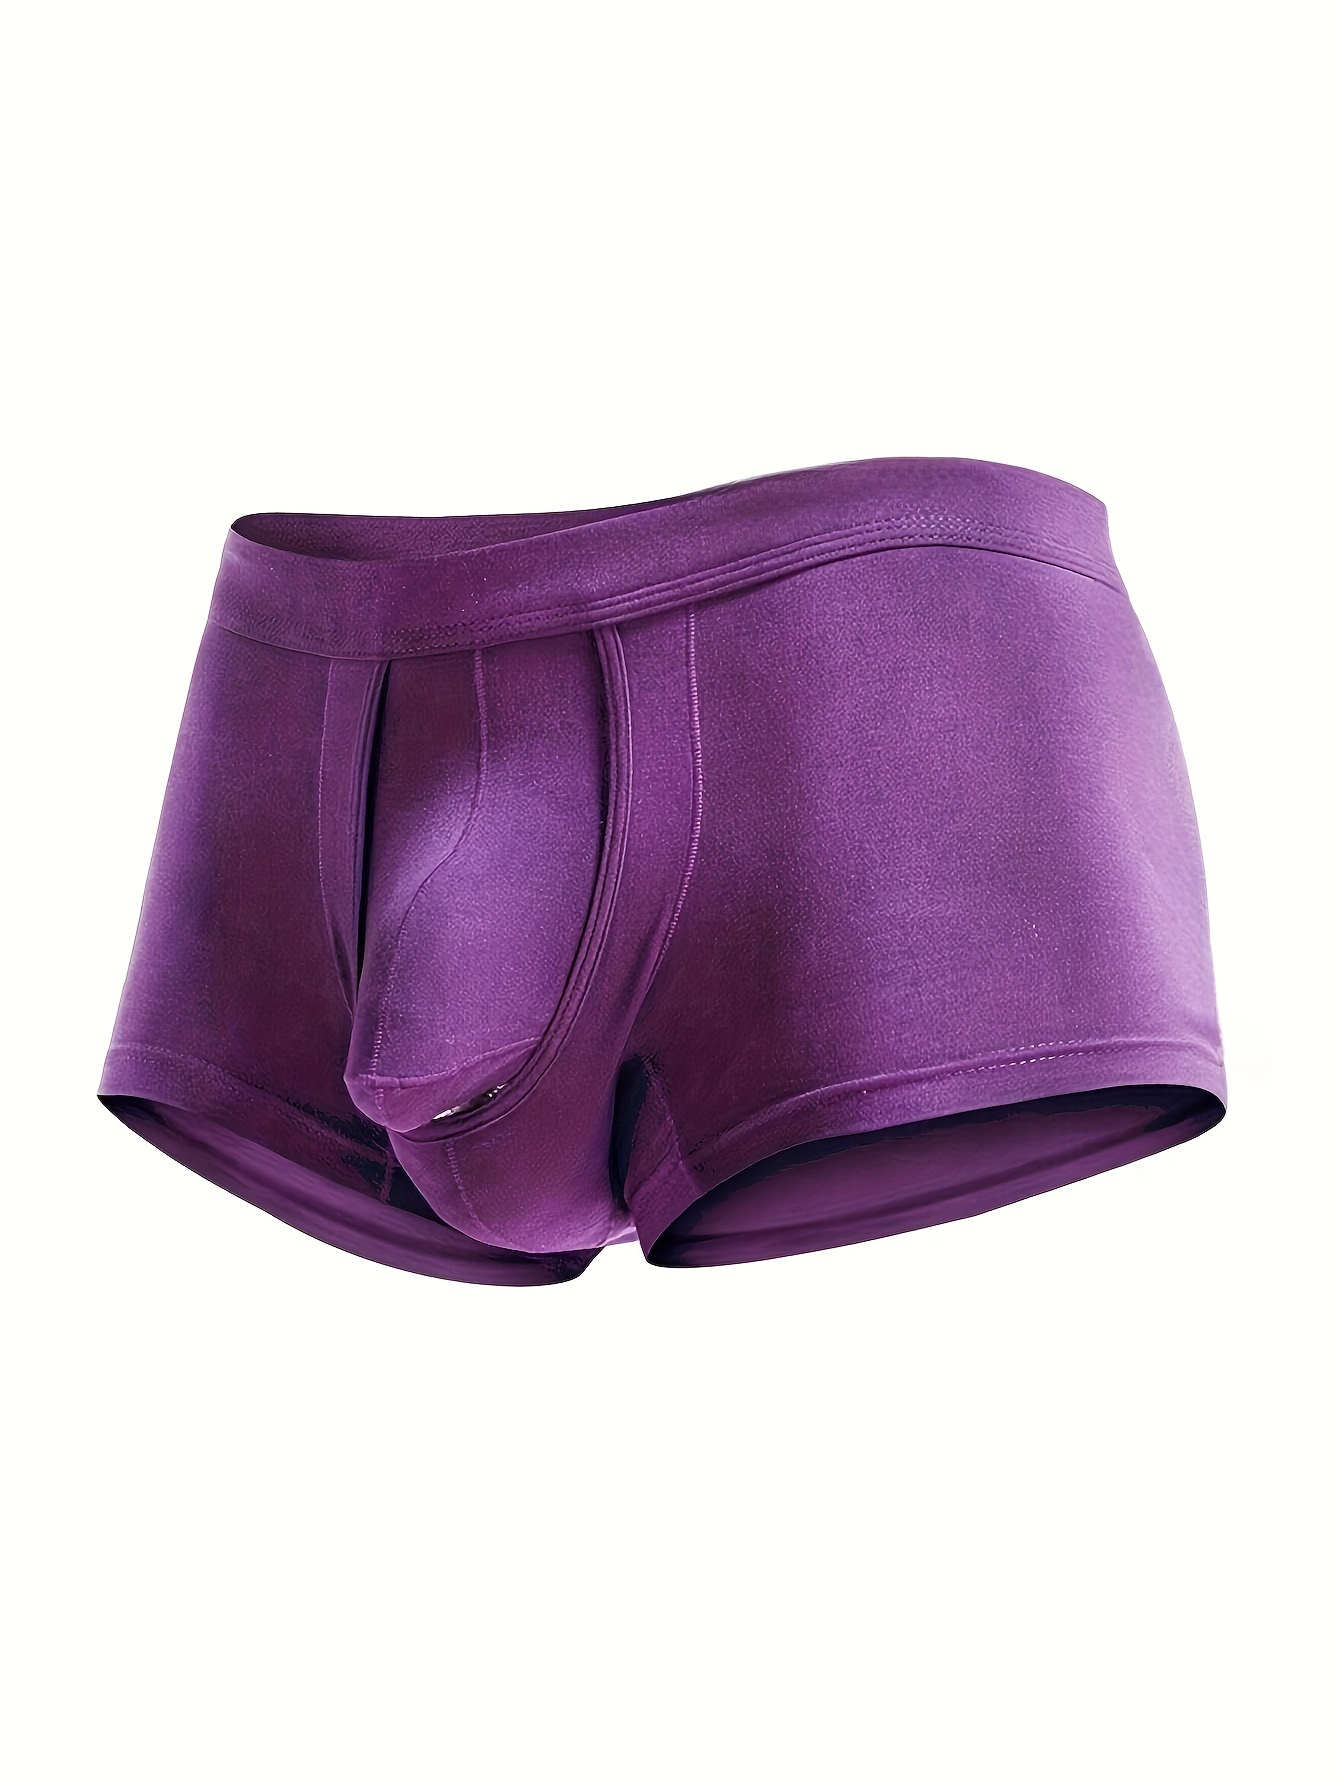 Underwear Expert Well Hung Meundies Boxer Brief Men's Best ENDOWED Underwear  Cushion Comfort Purple Padded removable Sport Indigo Lavender -  Canada